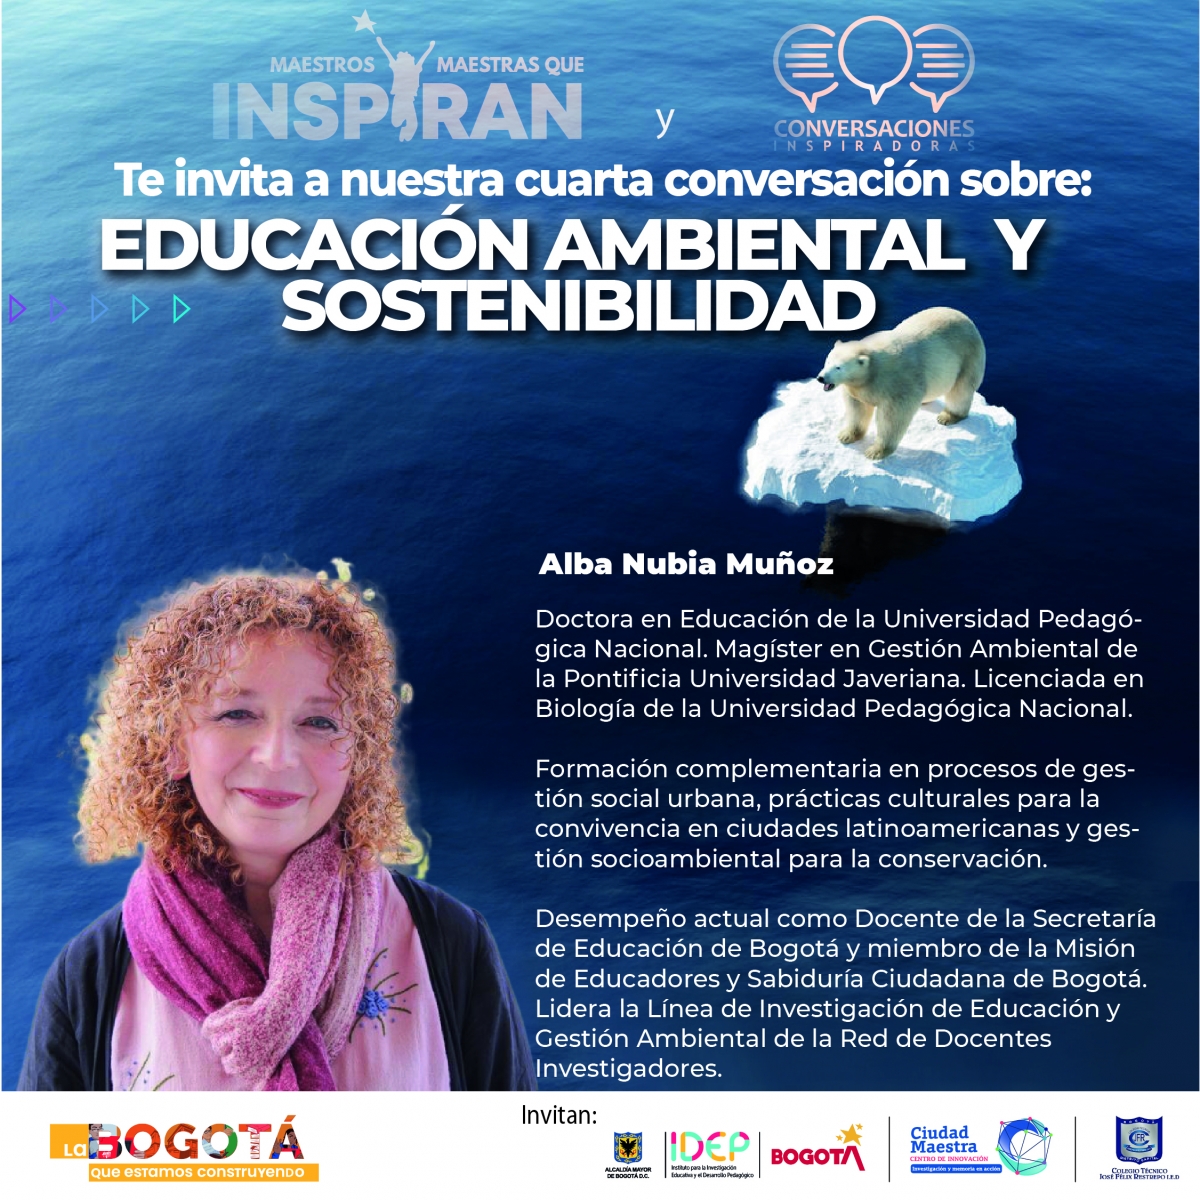 Imagen con la foto de la Doctora en Educación Alba Nubia Muñoz y un breve perfil de ella